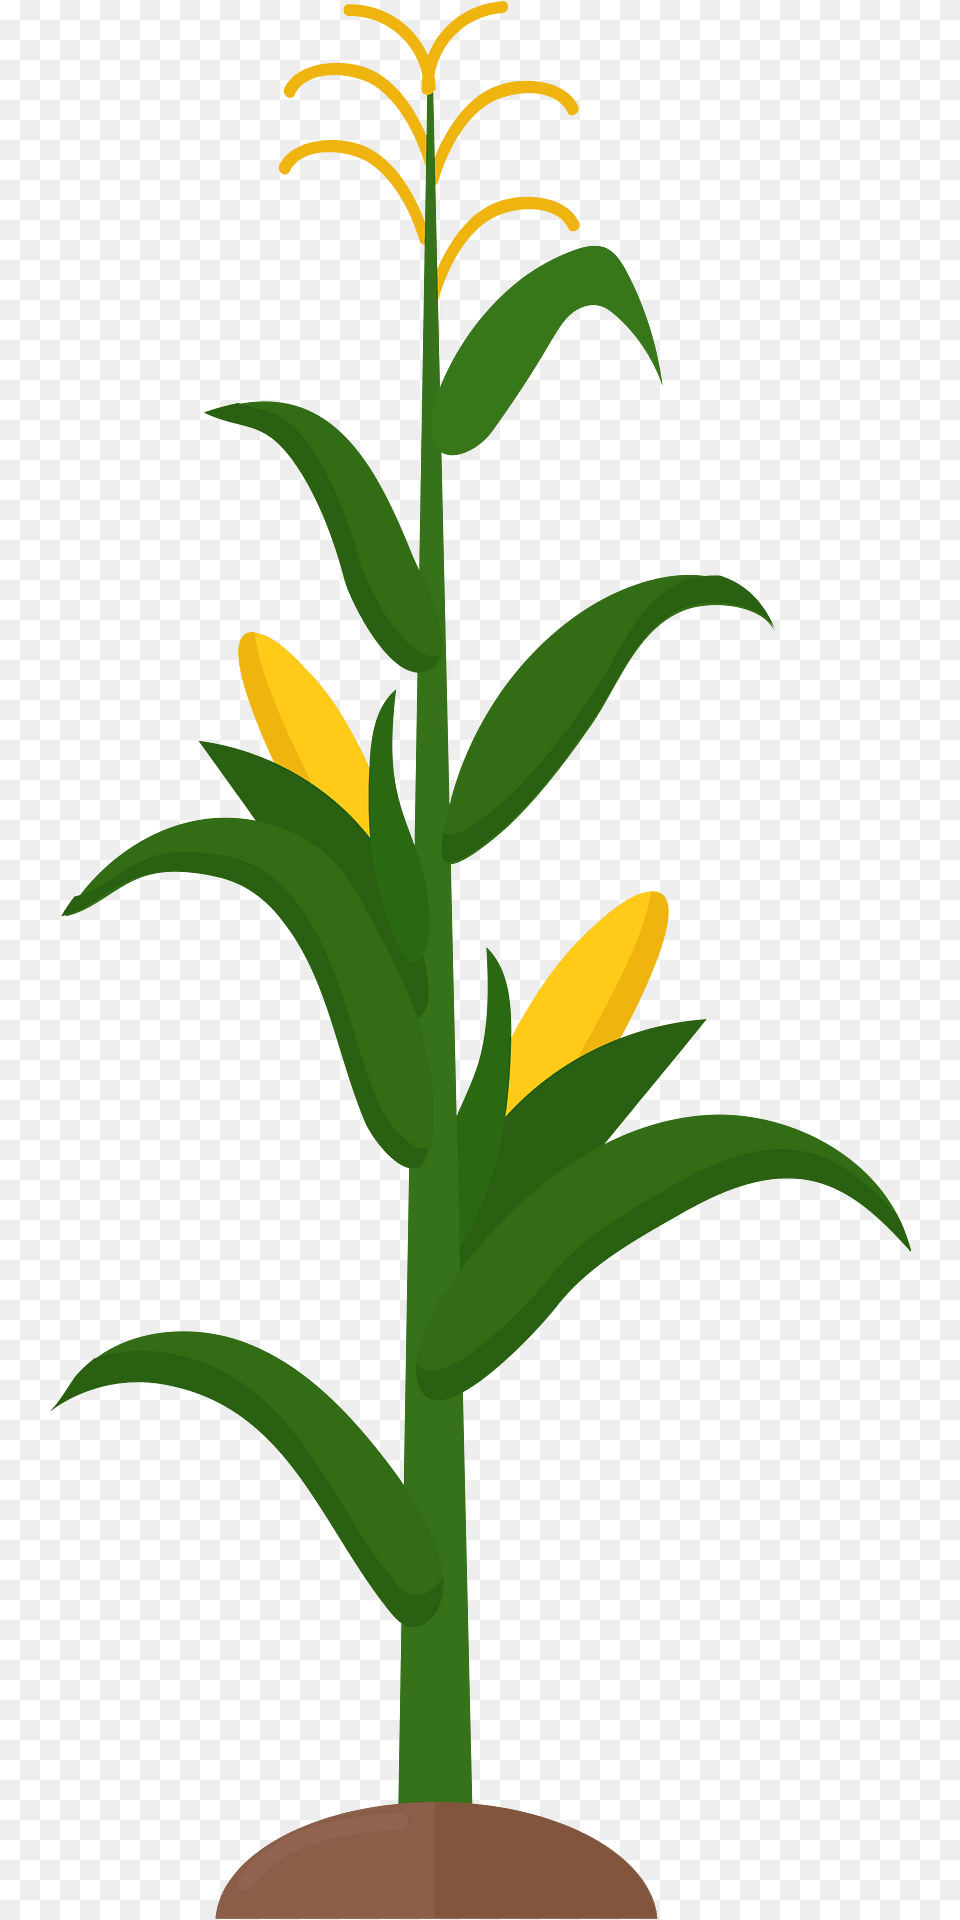 Corn Stalk Clipart, Flower, Plant, Leaf, Tree Png Image